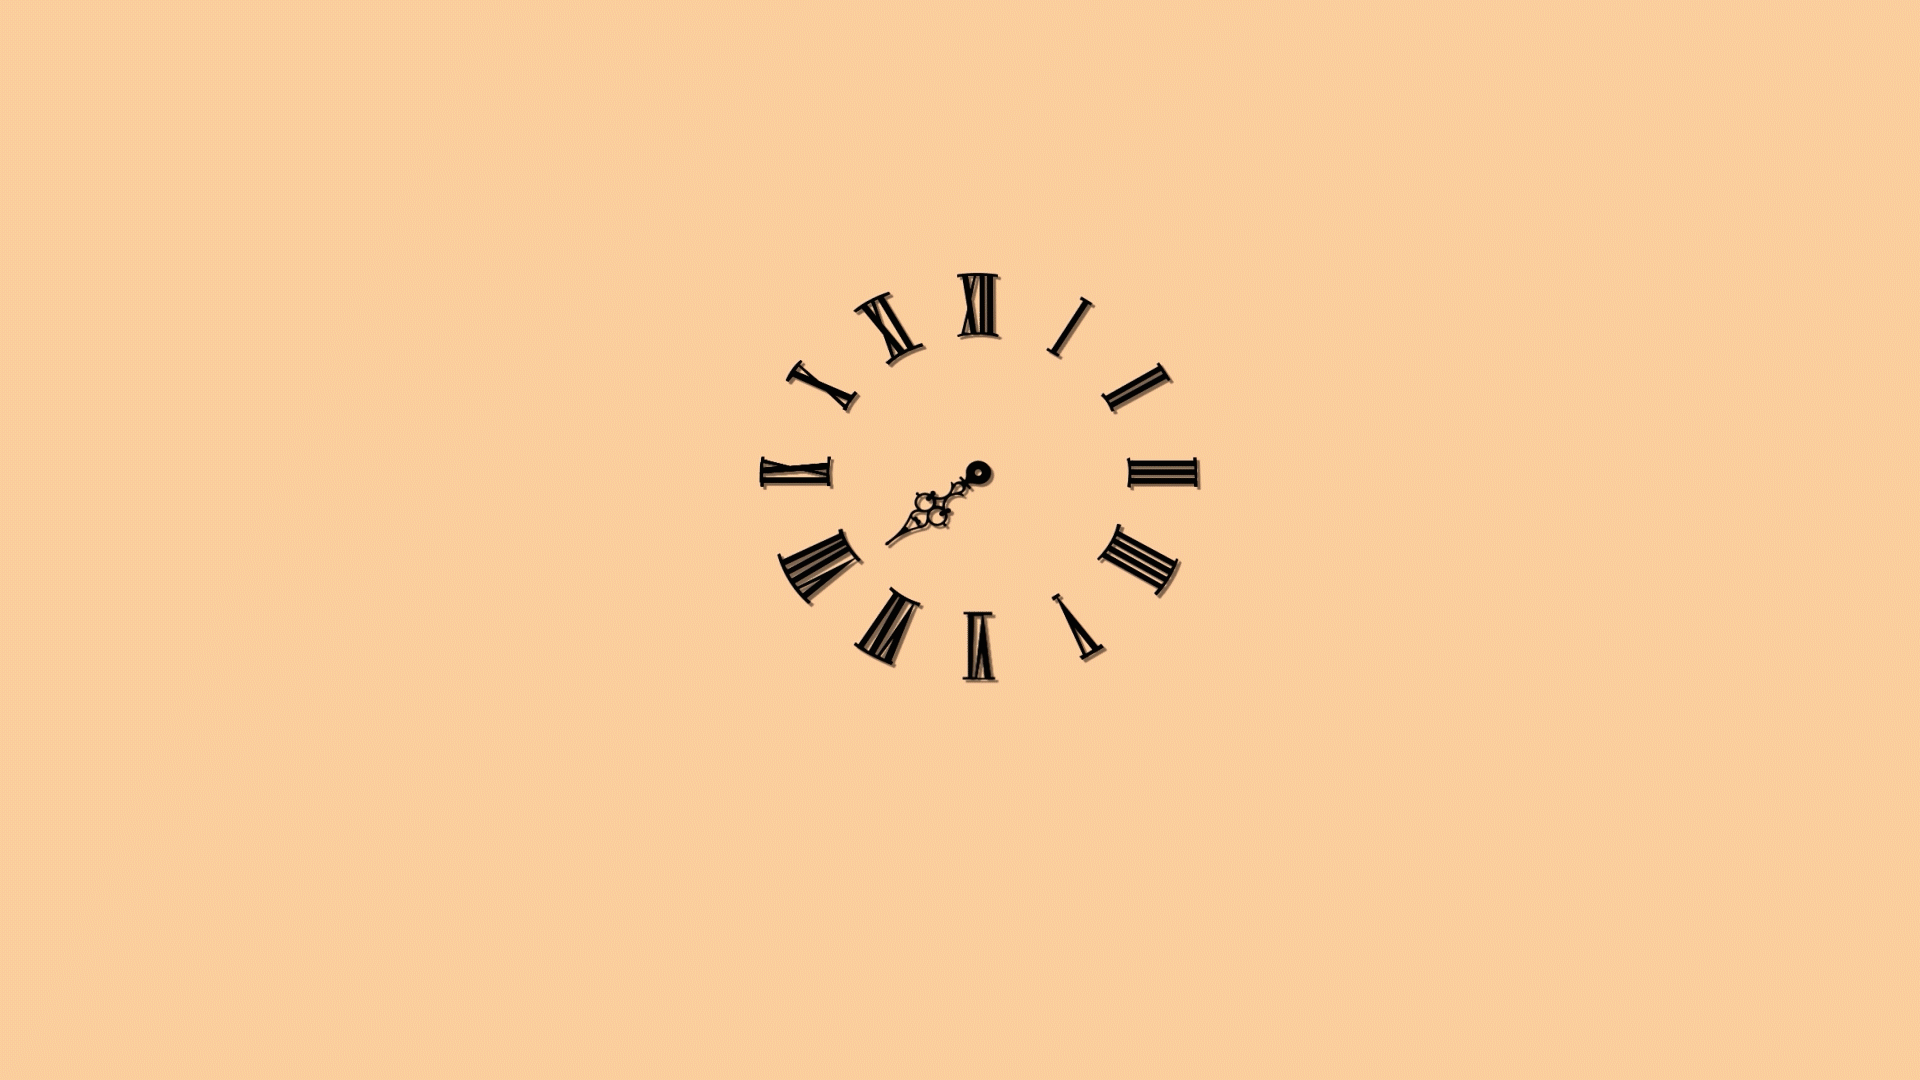 익스프레션(expression)을 활용해 시계의 초침 움직임 동작을 만든 모습